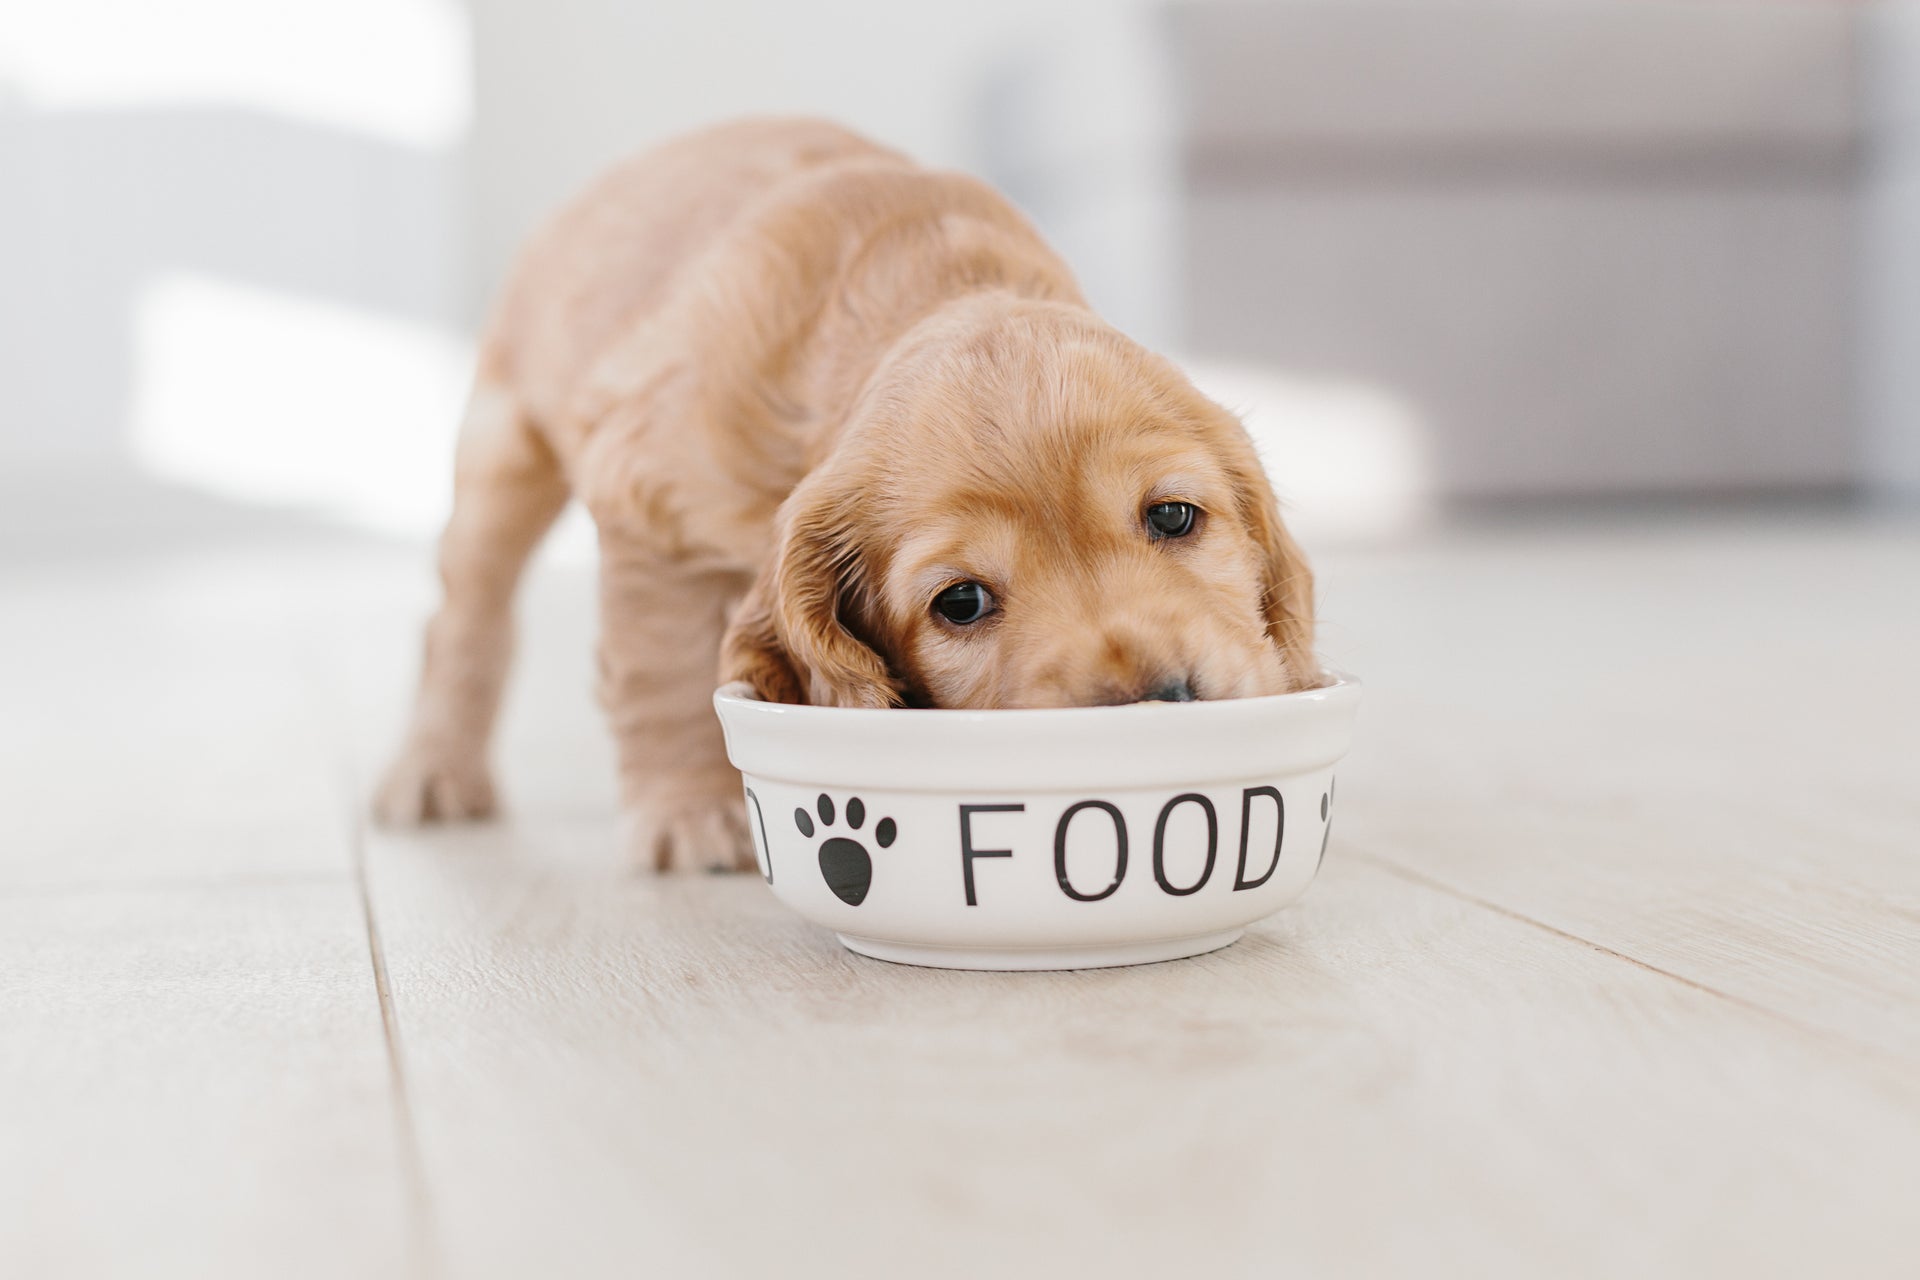 Load video: Best dog food